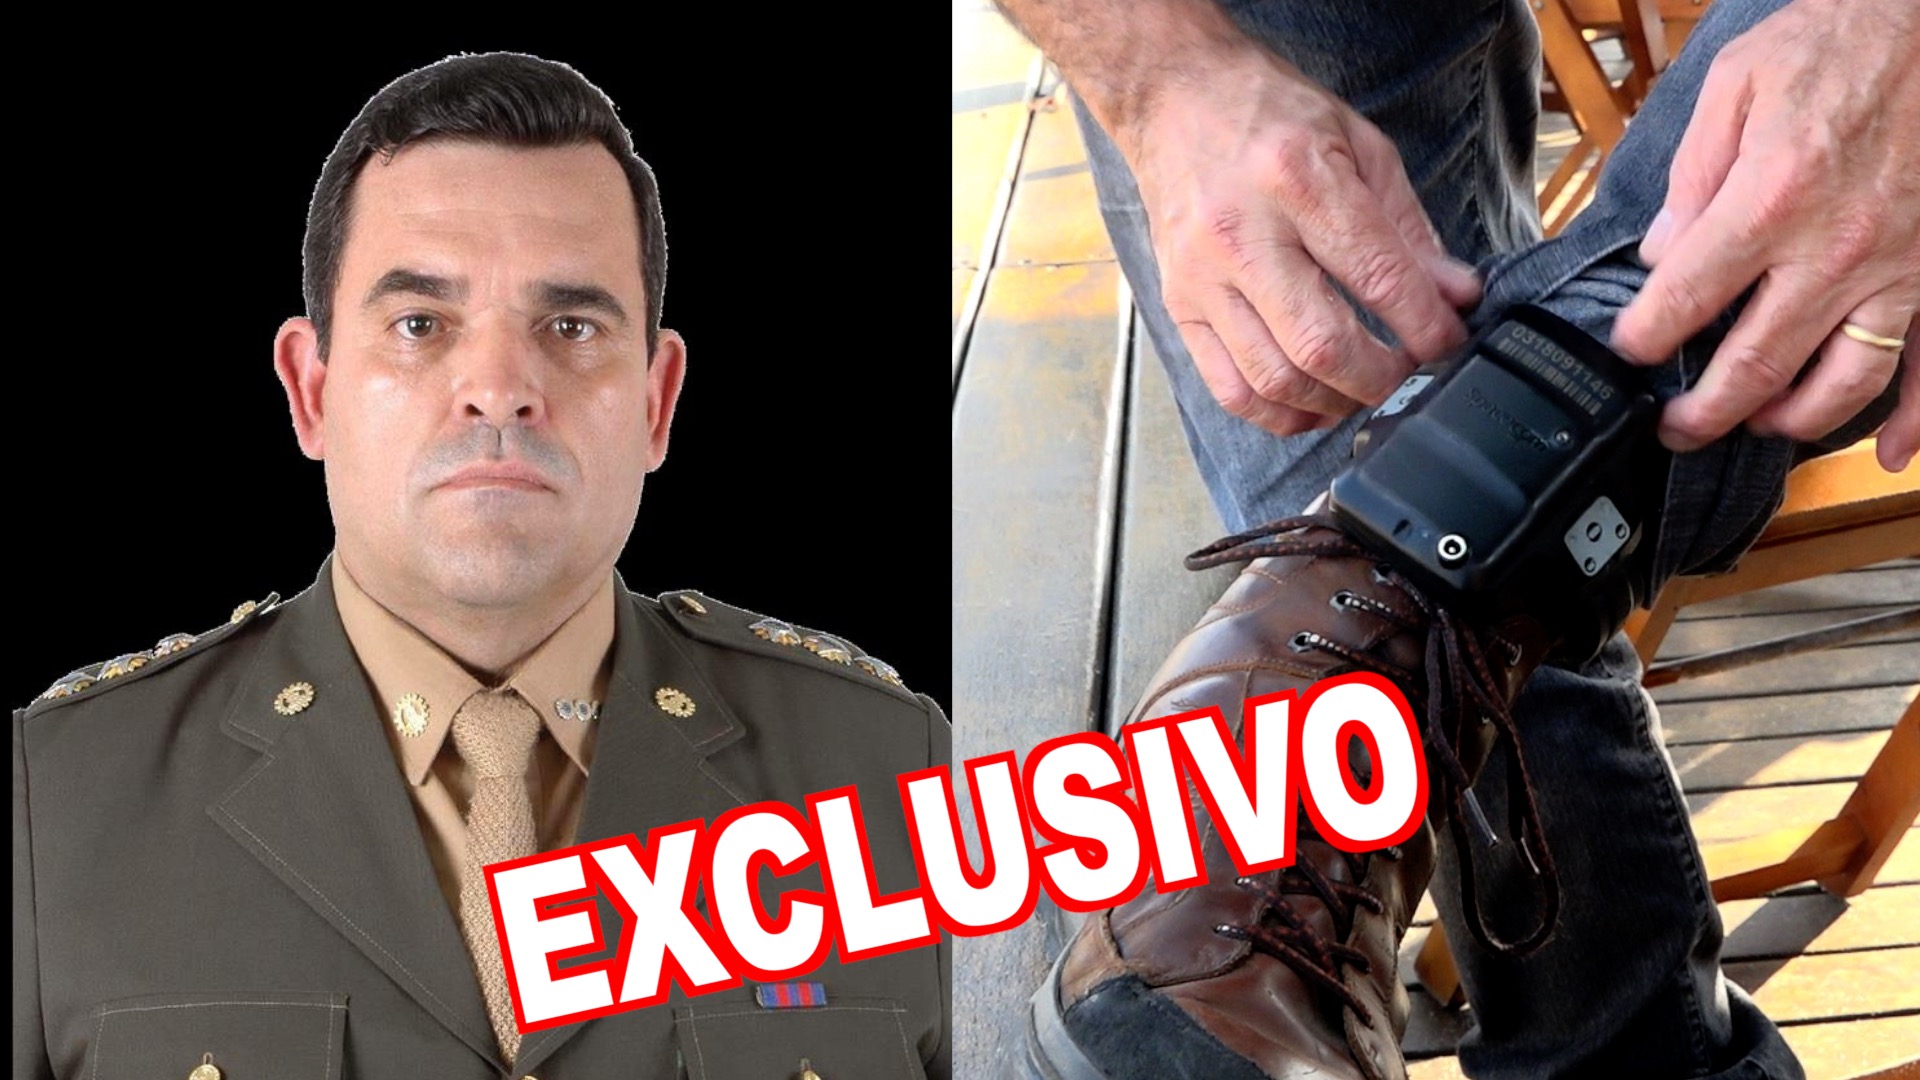 EXCLUSIVO: Justiça manda retirar tornozeleira do Coronel do Exército Carlos Alves